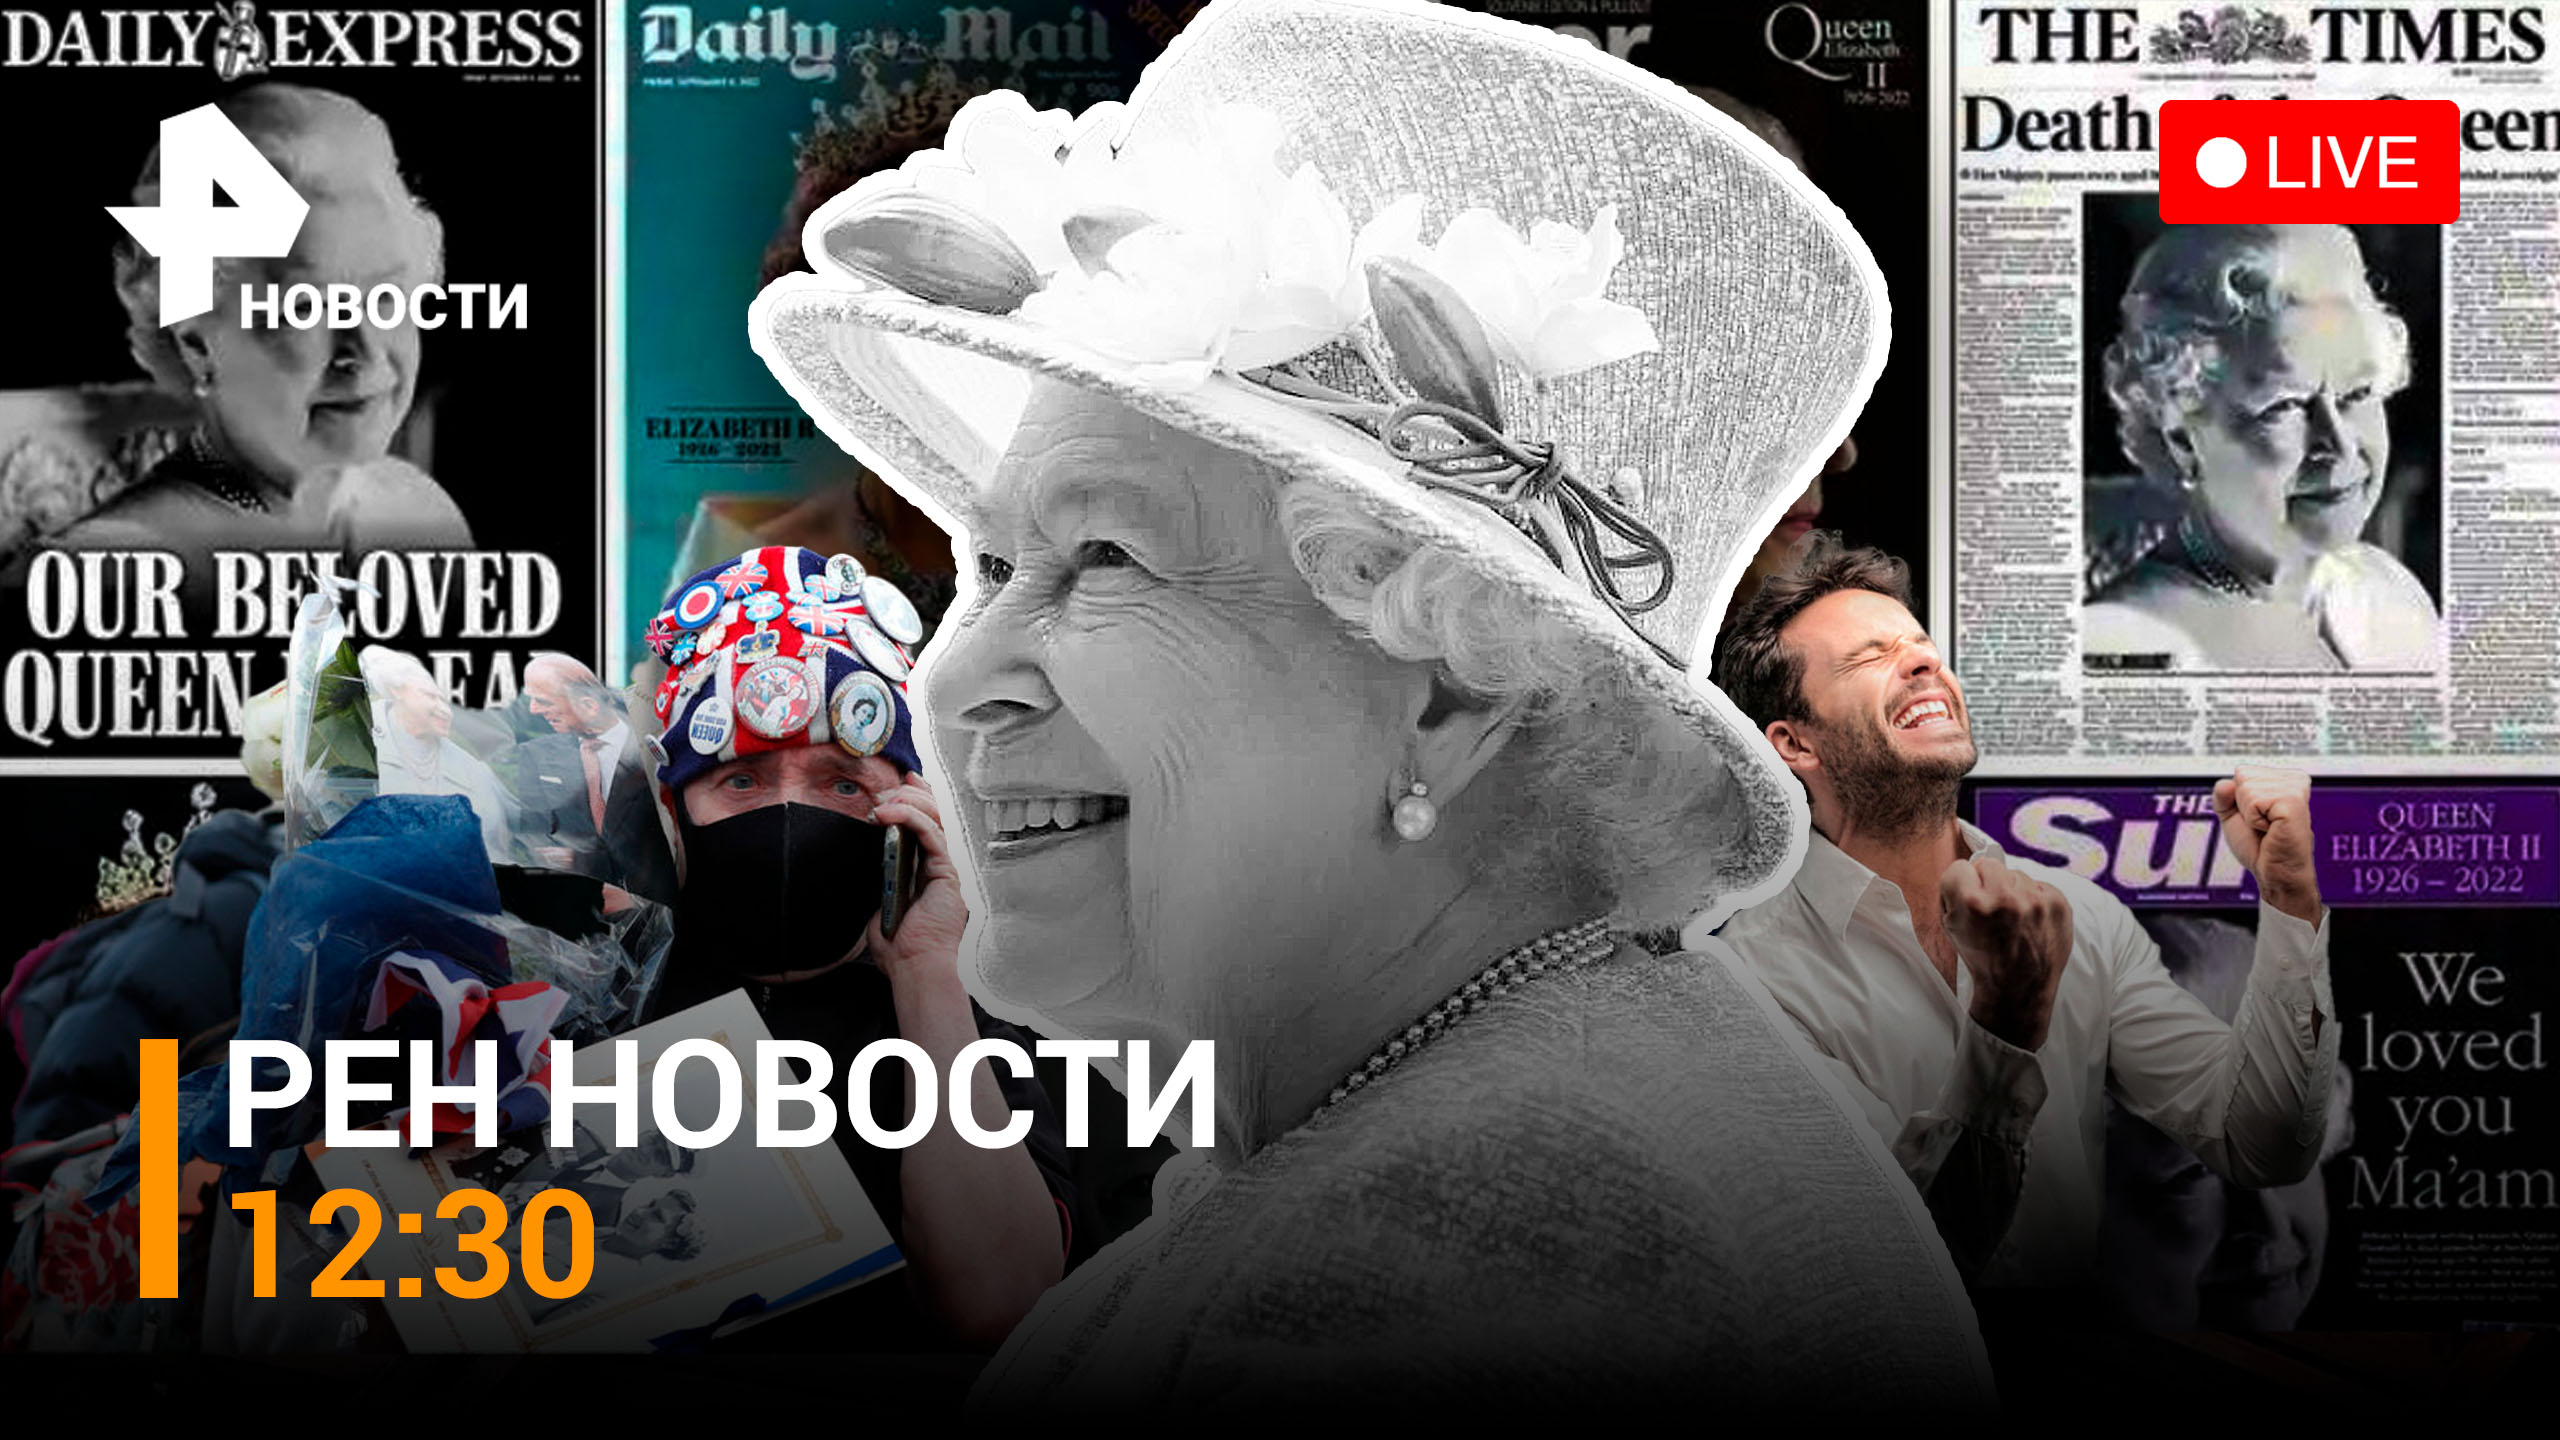 Кто отмечал смерть Елизаветы II с радостными криками и шампанским? / РЕН Новости 12:30 от 9.09.2022